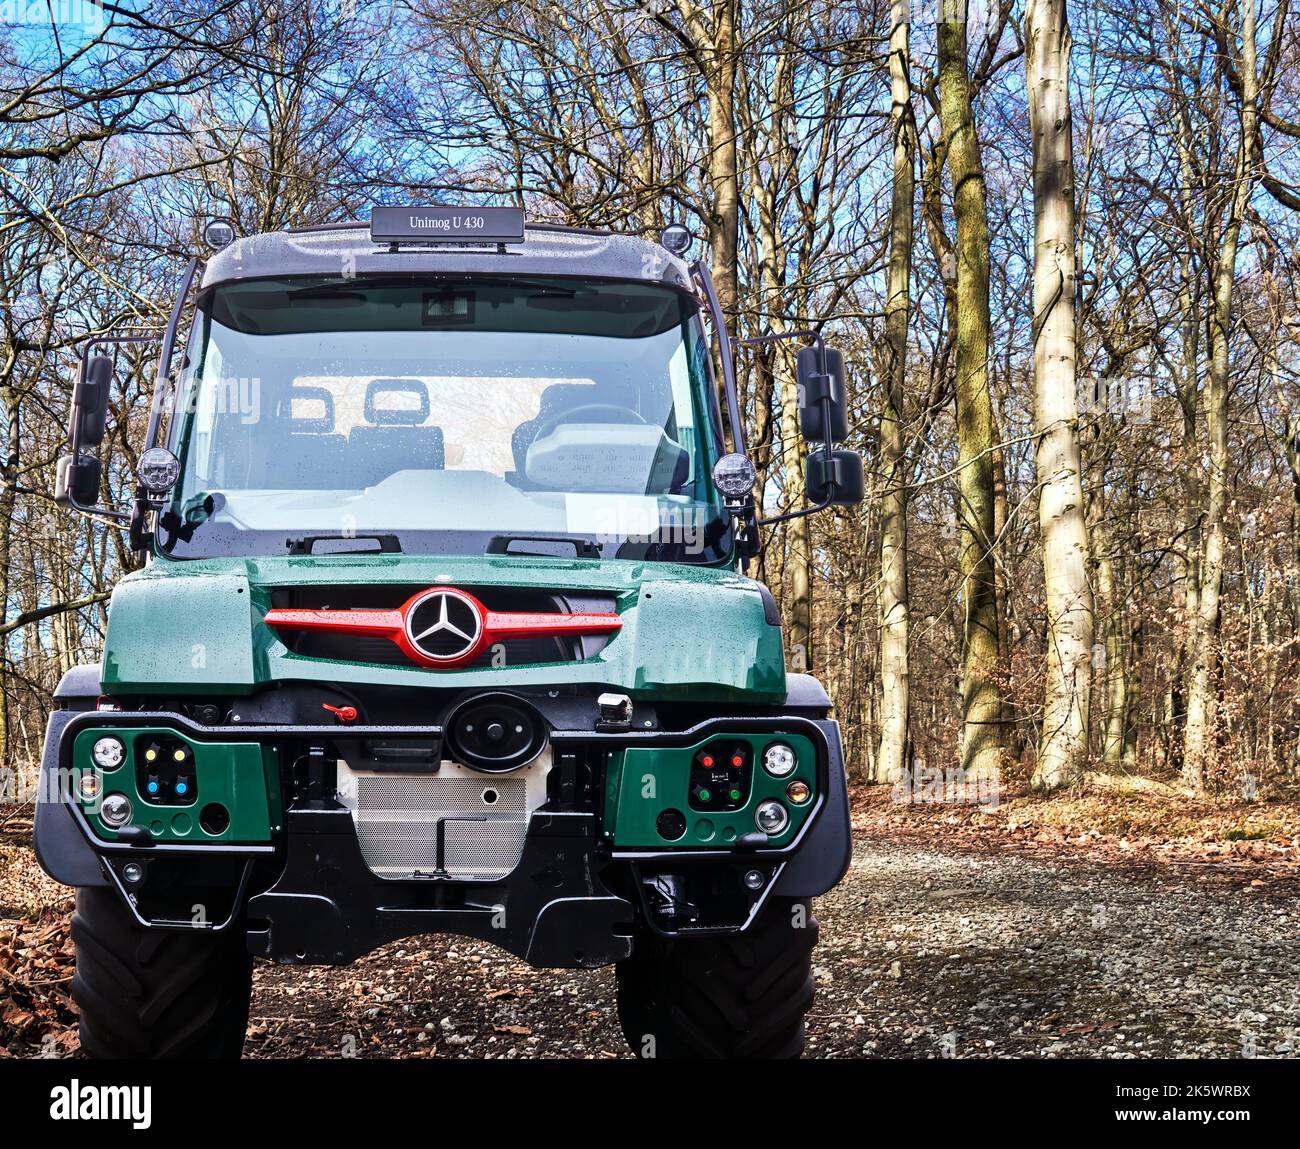 Unimog U430 leggendario camion piccolo per terreni difficili da Mercedes Benz, composito in una strada forestale, Hannover, Germania, 24 settembre 2022 Foto Stock